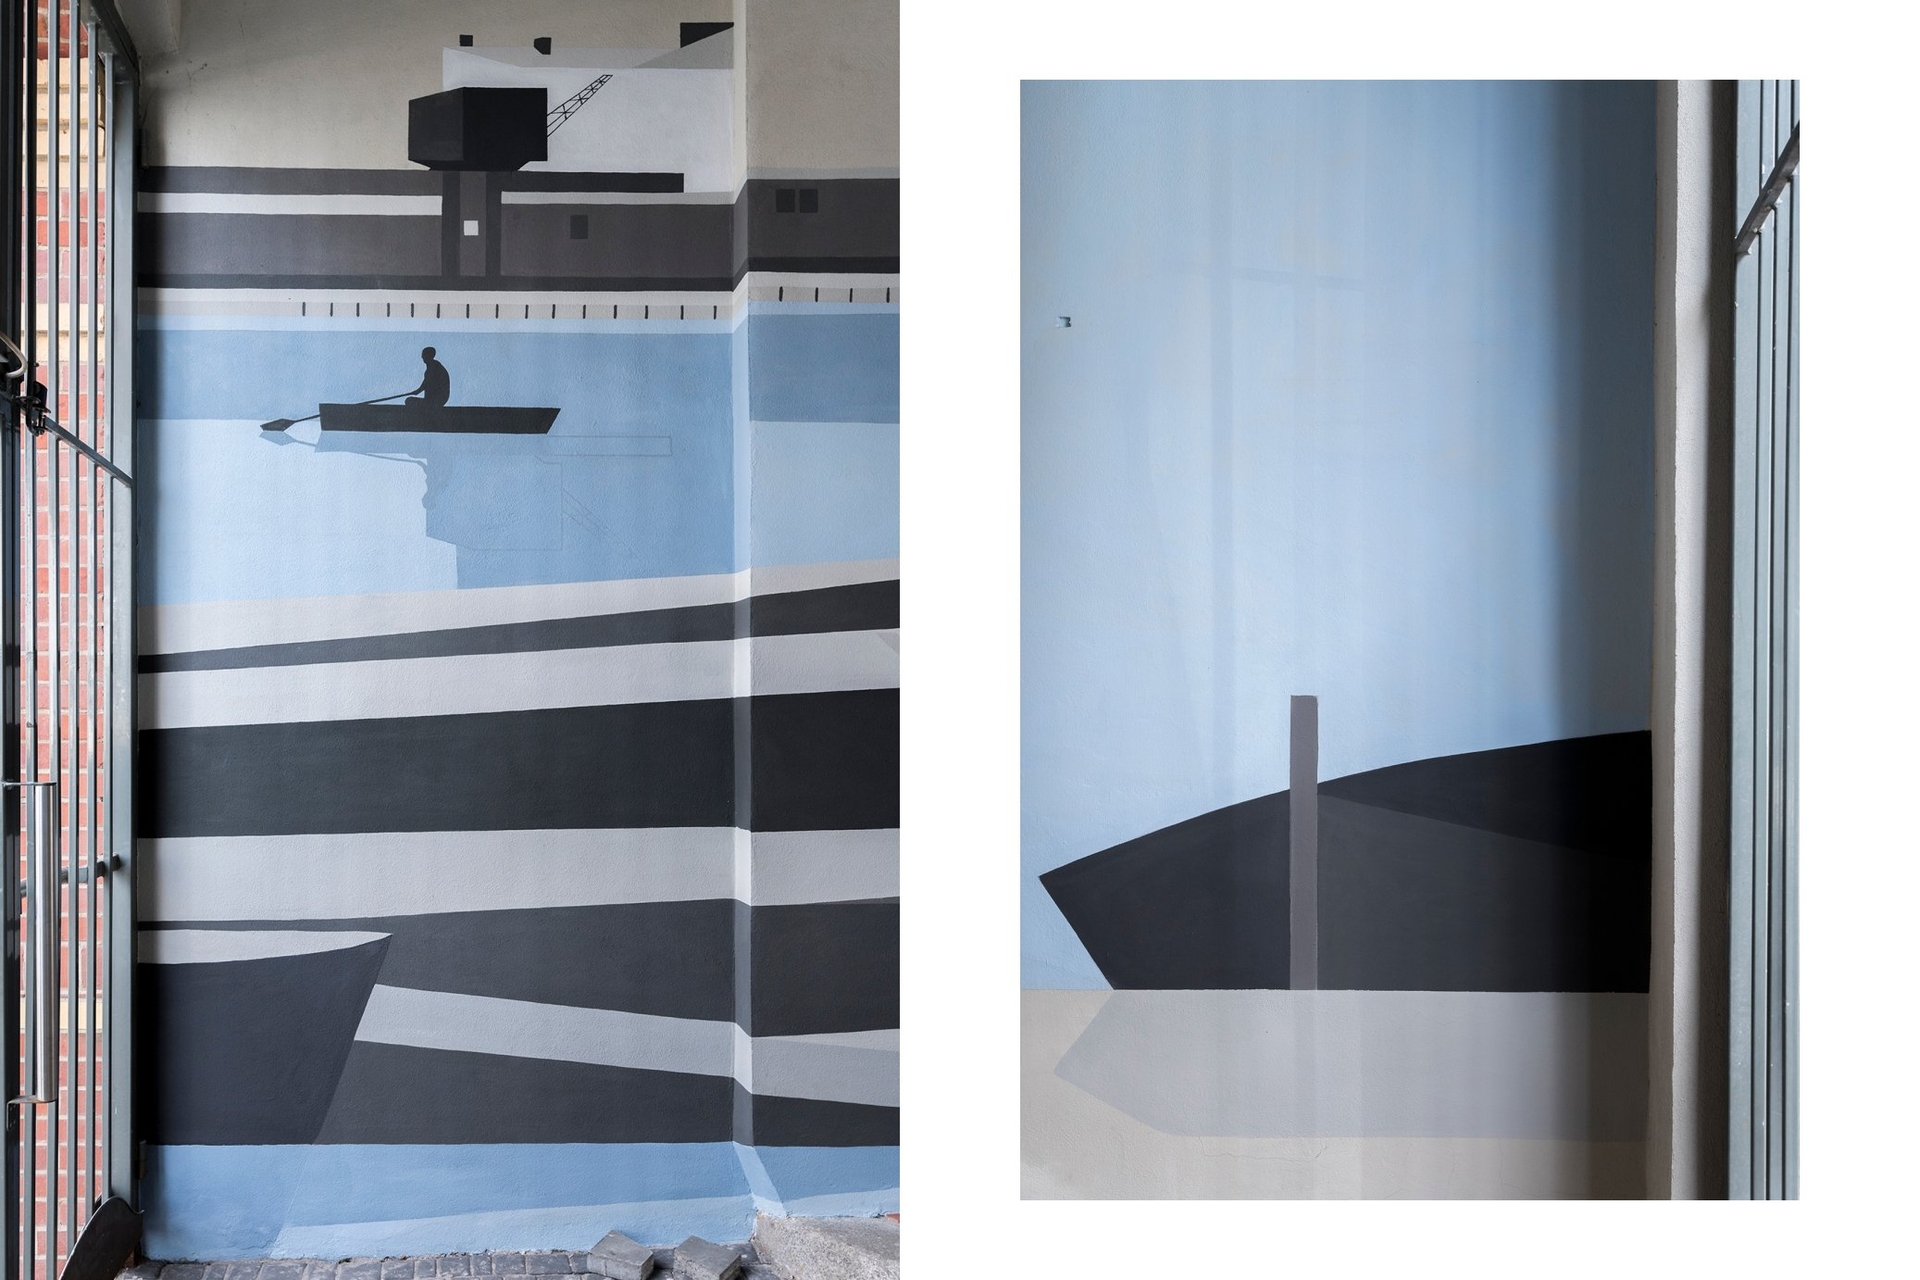 Na obu zdjęciach widać zbliżenia muralu w kamienicy przy ul. Szyperskiej 2 w Poznaniu, wykonanego według projektu Anny Marii Skotarek. Na środku zdjęcia z lewej strony widać osobę wiosłującą w łodzi na rzece. Na dole widać łodzie przycumowane do brzegu, a na górze zabudowania portowe i dźwig. Zabudowania, żuraw i wioślarz odbijają się w lustrze wody. Dominują pastelowe błękity, szarości i czernie. Zdjęcie z lewej strony przedstawia inny fragment muralu, na którym widać sylwetkę przycumowanej do brzegu łódki. Na obu zdjęciach dominują pastelowe błękity, ciepłe szarości i czernie.